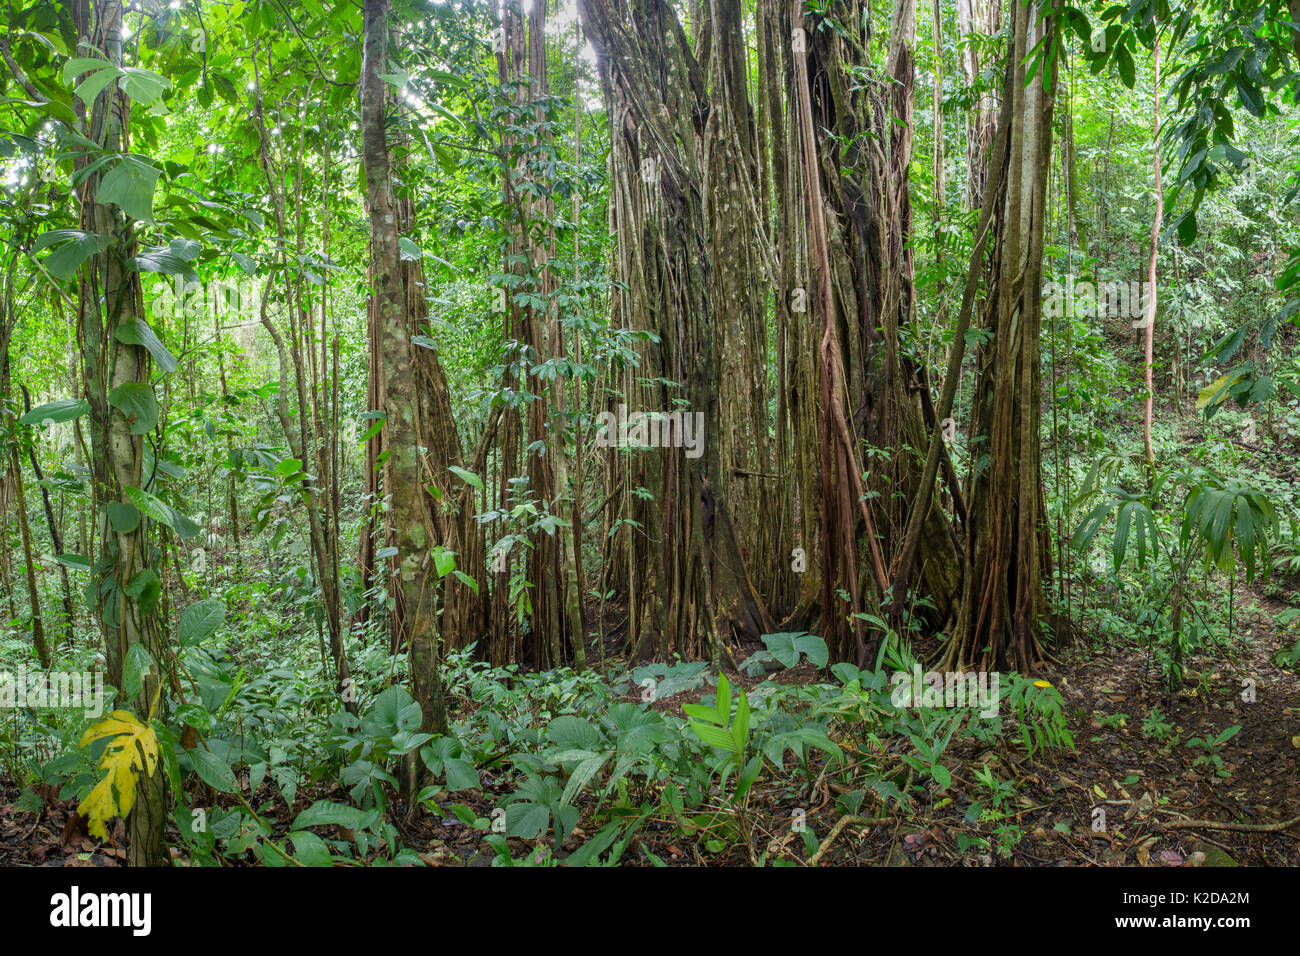 Würgefeige (Ficus zarazalensis) Luftwurzeln. In diesem Fall ist der ursprüngliche Host Baum, der die Würgefeige klettern wurde getötet und verrottete wurde entfernt, so dass ein Hohlraum in der Mitte. Diese Spezies ist endemisch auf der Halbinsel Osa, Costa Rica. Stockfoto